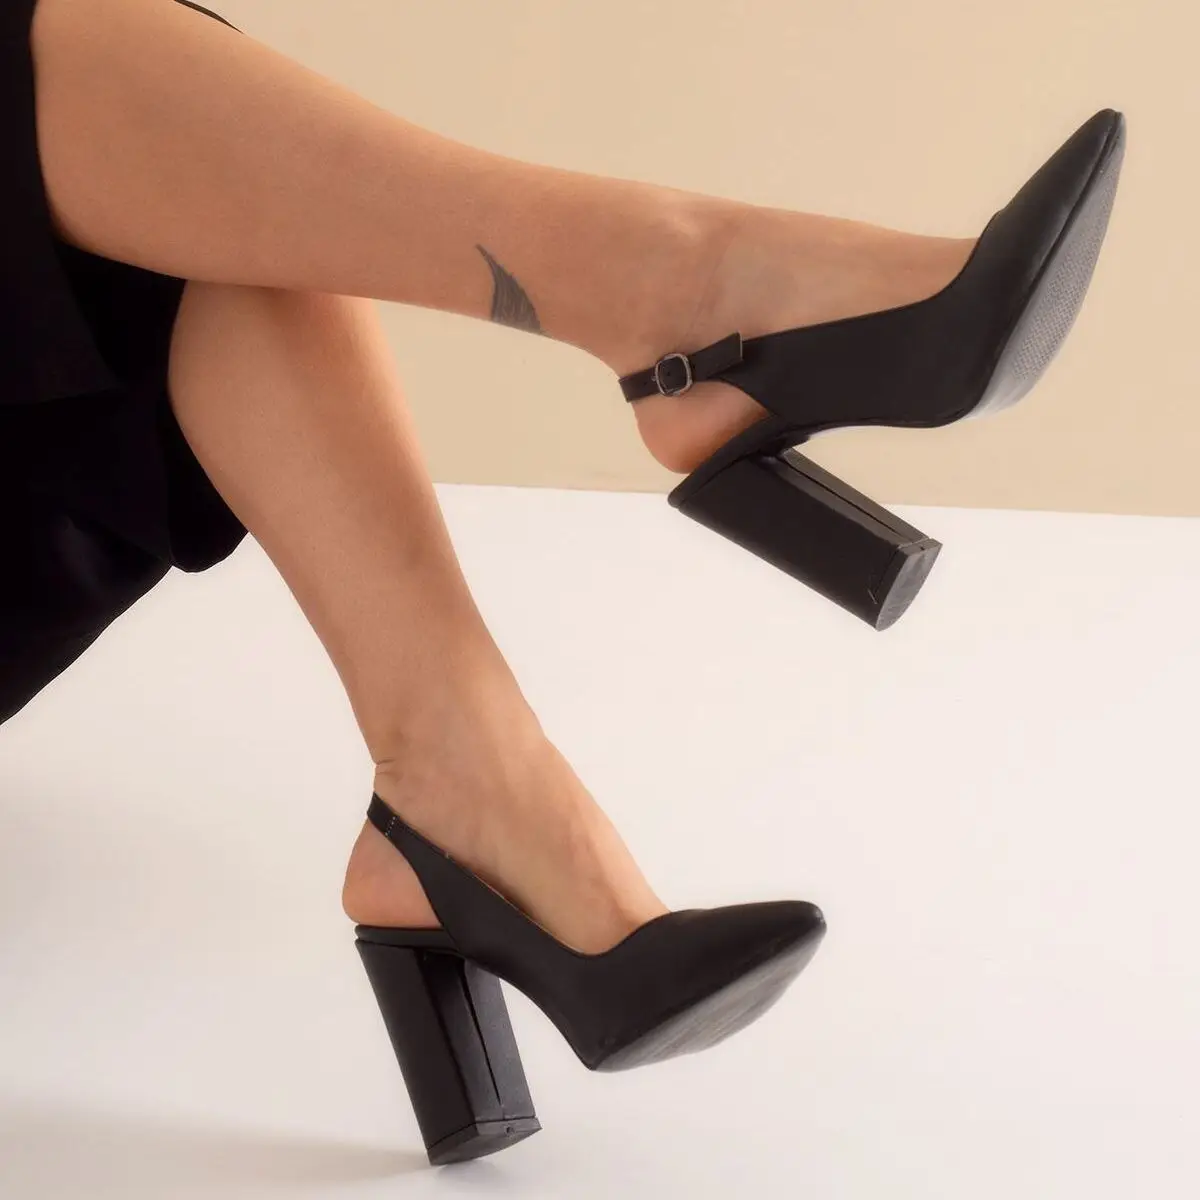 Dıanna Siyah kadın Yüksek Topuklu Moda Uygun topuklu ayakkabılar Lüks Kadın Pompaları 2021 Şık Birinci Kalite Deri Pompaları Rahat Düğün Gelin Stiletta Platformu